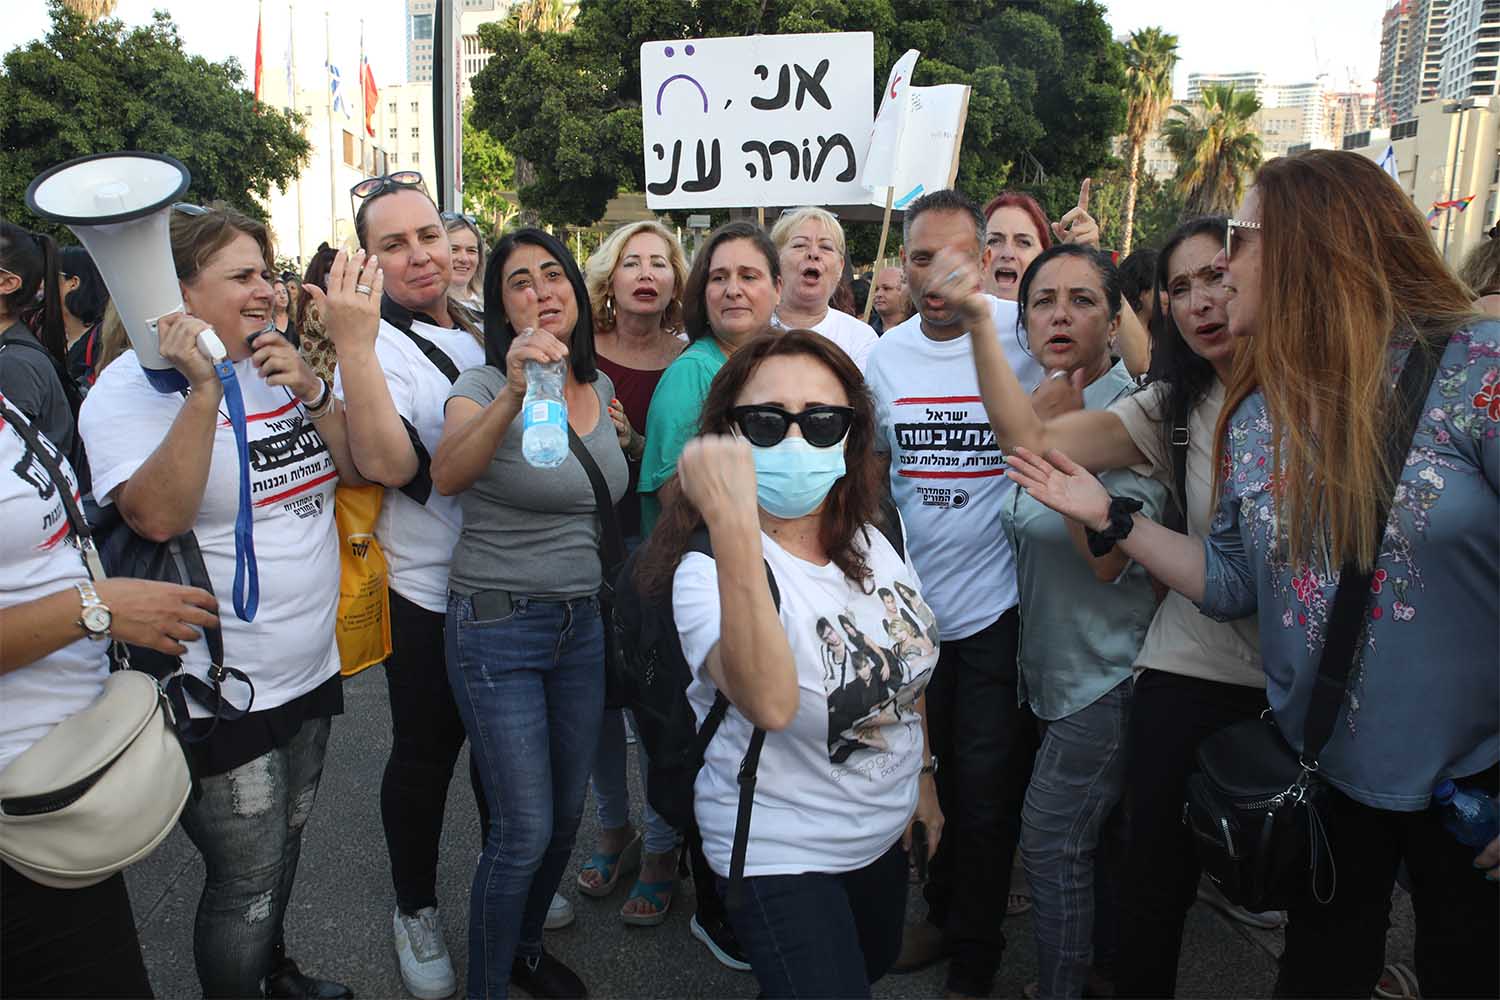 הפגנה של הסתדרות המורים בתל אביב. ״ודאי שאני בעד השביתה, איזה כוח יש אחרת?״ (צילום: כדיה לוי)